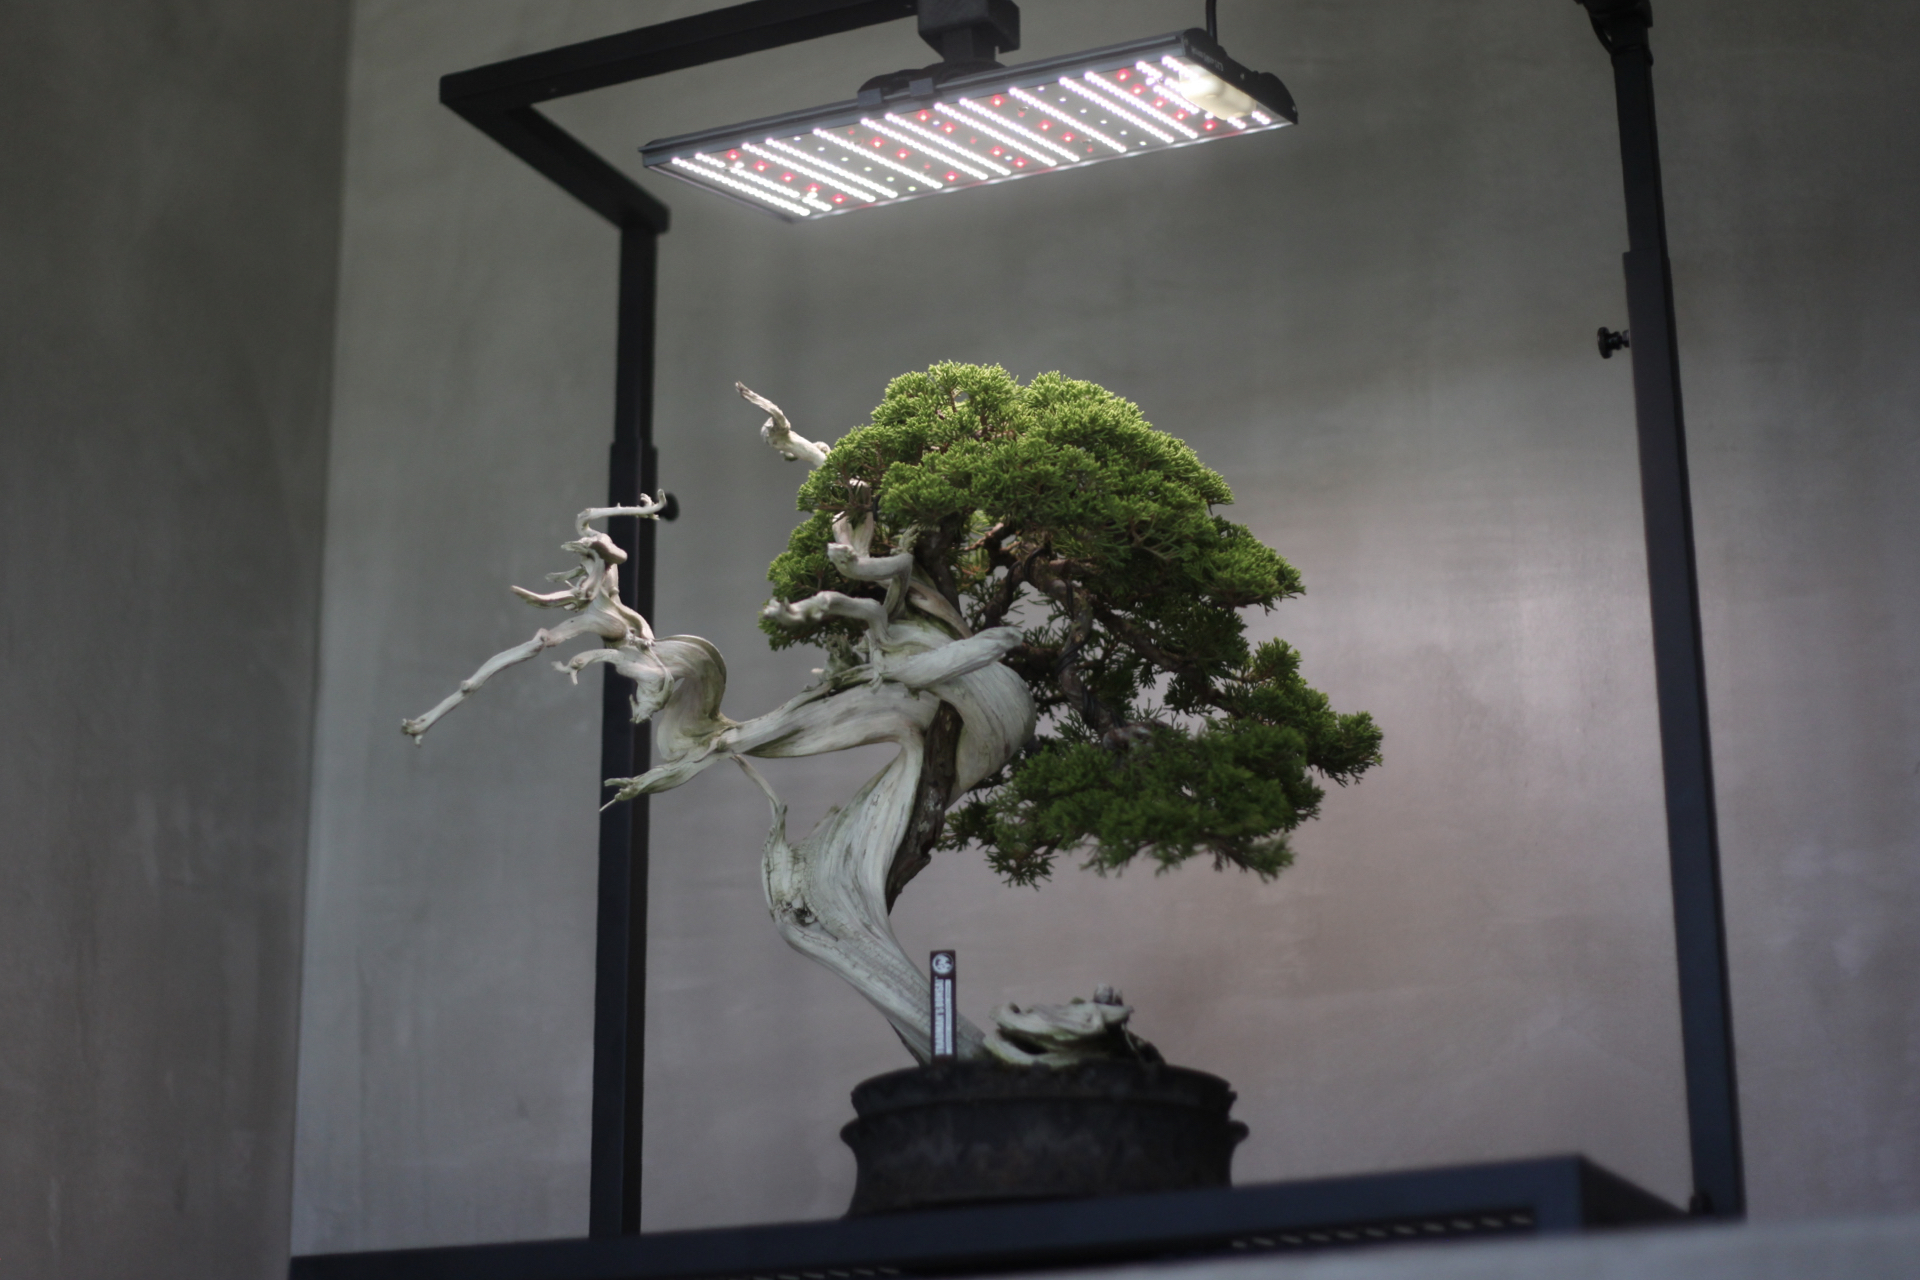 日本の伝統文化である盆栽を世界に伝える集団 TRADMAN'S BONSAIが盆栽